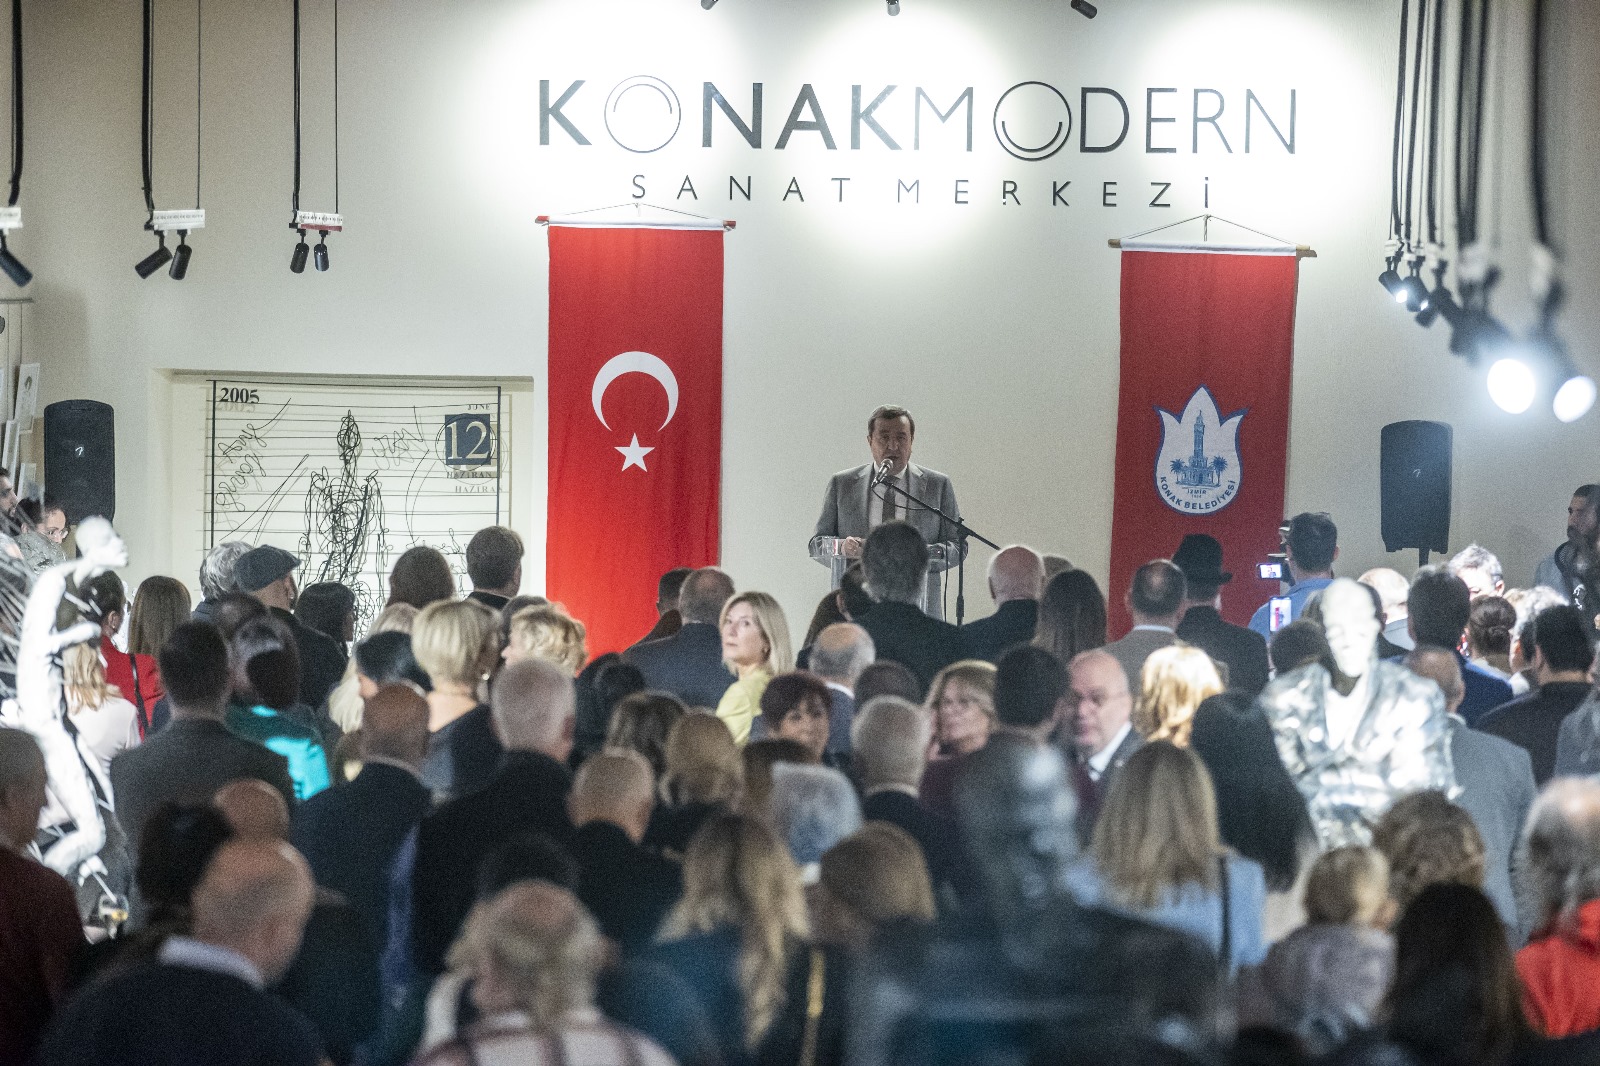 Konak Belediye Başkanı ve İzmir Büyükşehir Belediye Başkan Aday Adayı Abdül Batur, Konak Modern’in farklı kültürleri buluşturan bir sanat köprüsü olacağını söyledi. (1)